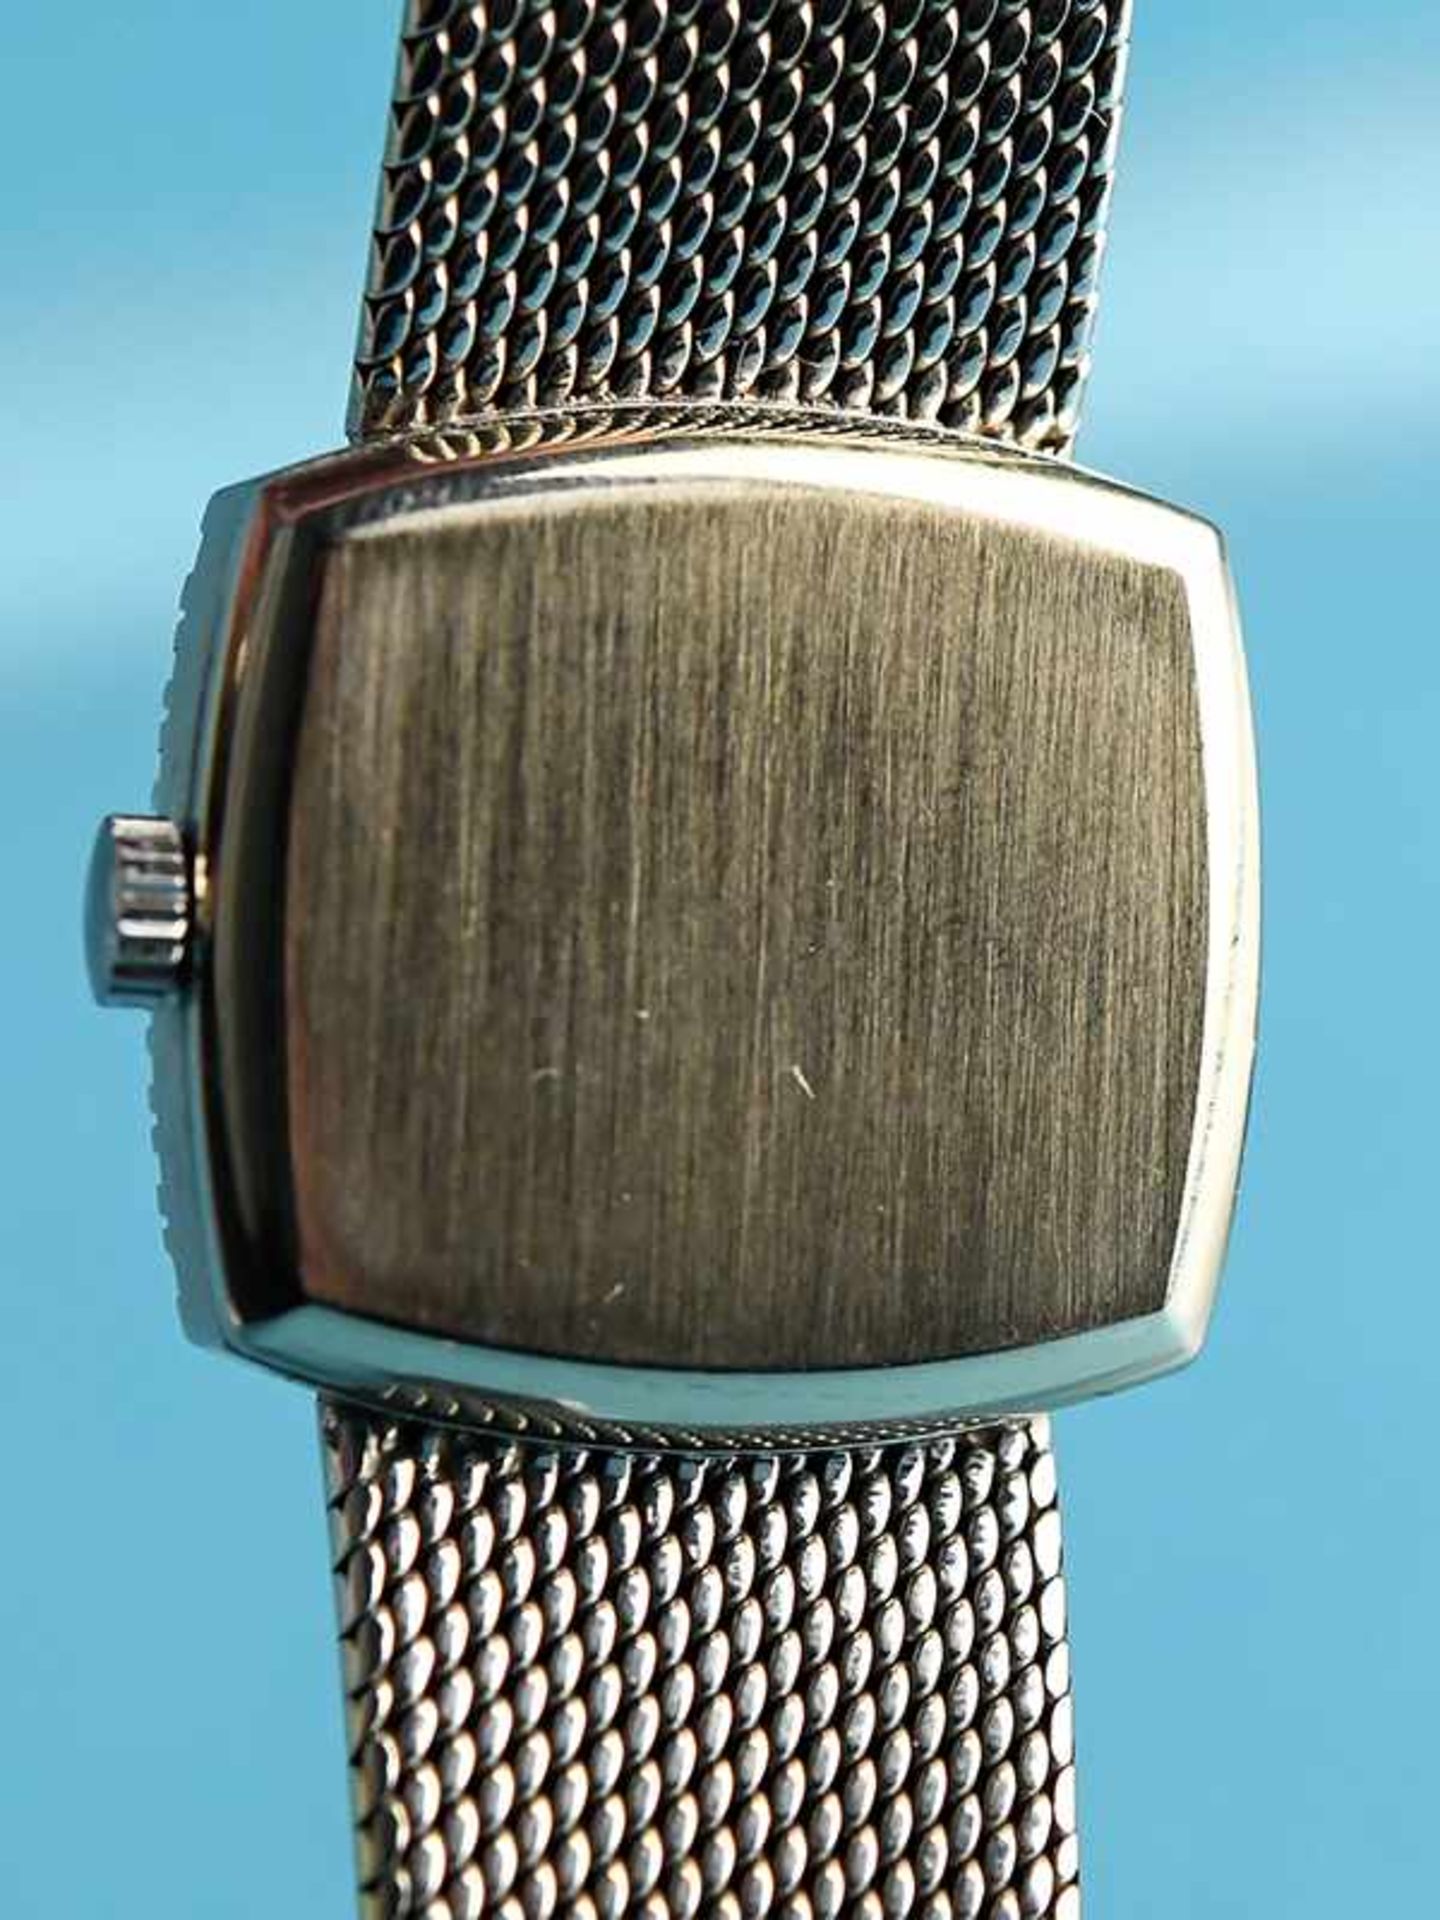 Damenarmbanduhr mit 30 Brillanten, zusammen ca. 0,6 ct, bezeichnet Genève, 80-er Jahre. 750/- - Image 2 of 3